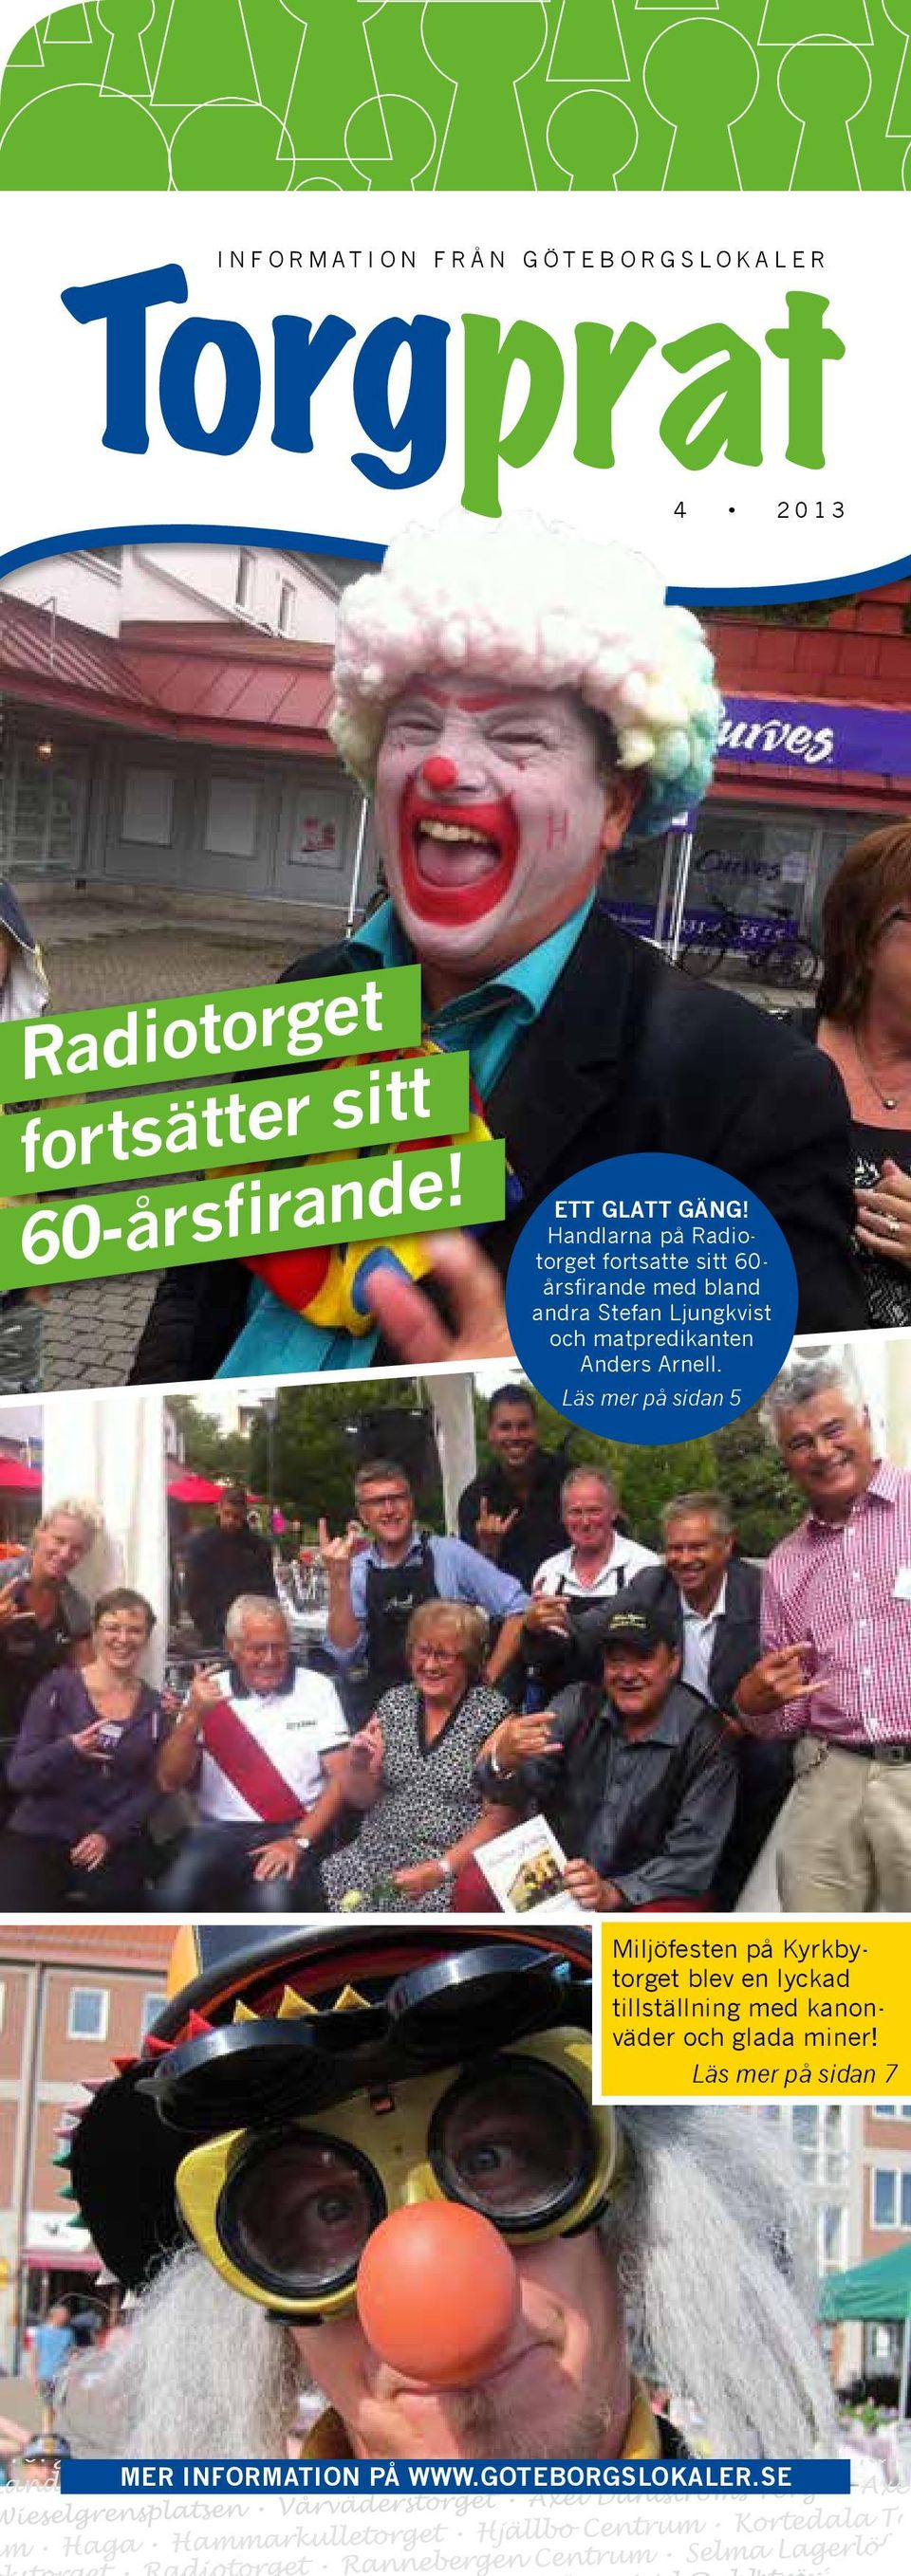 Handlarna på Radiotorget fortsatte sitt 60- årsfirande med bland andra Stefan